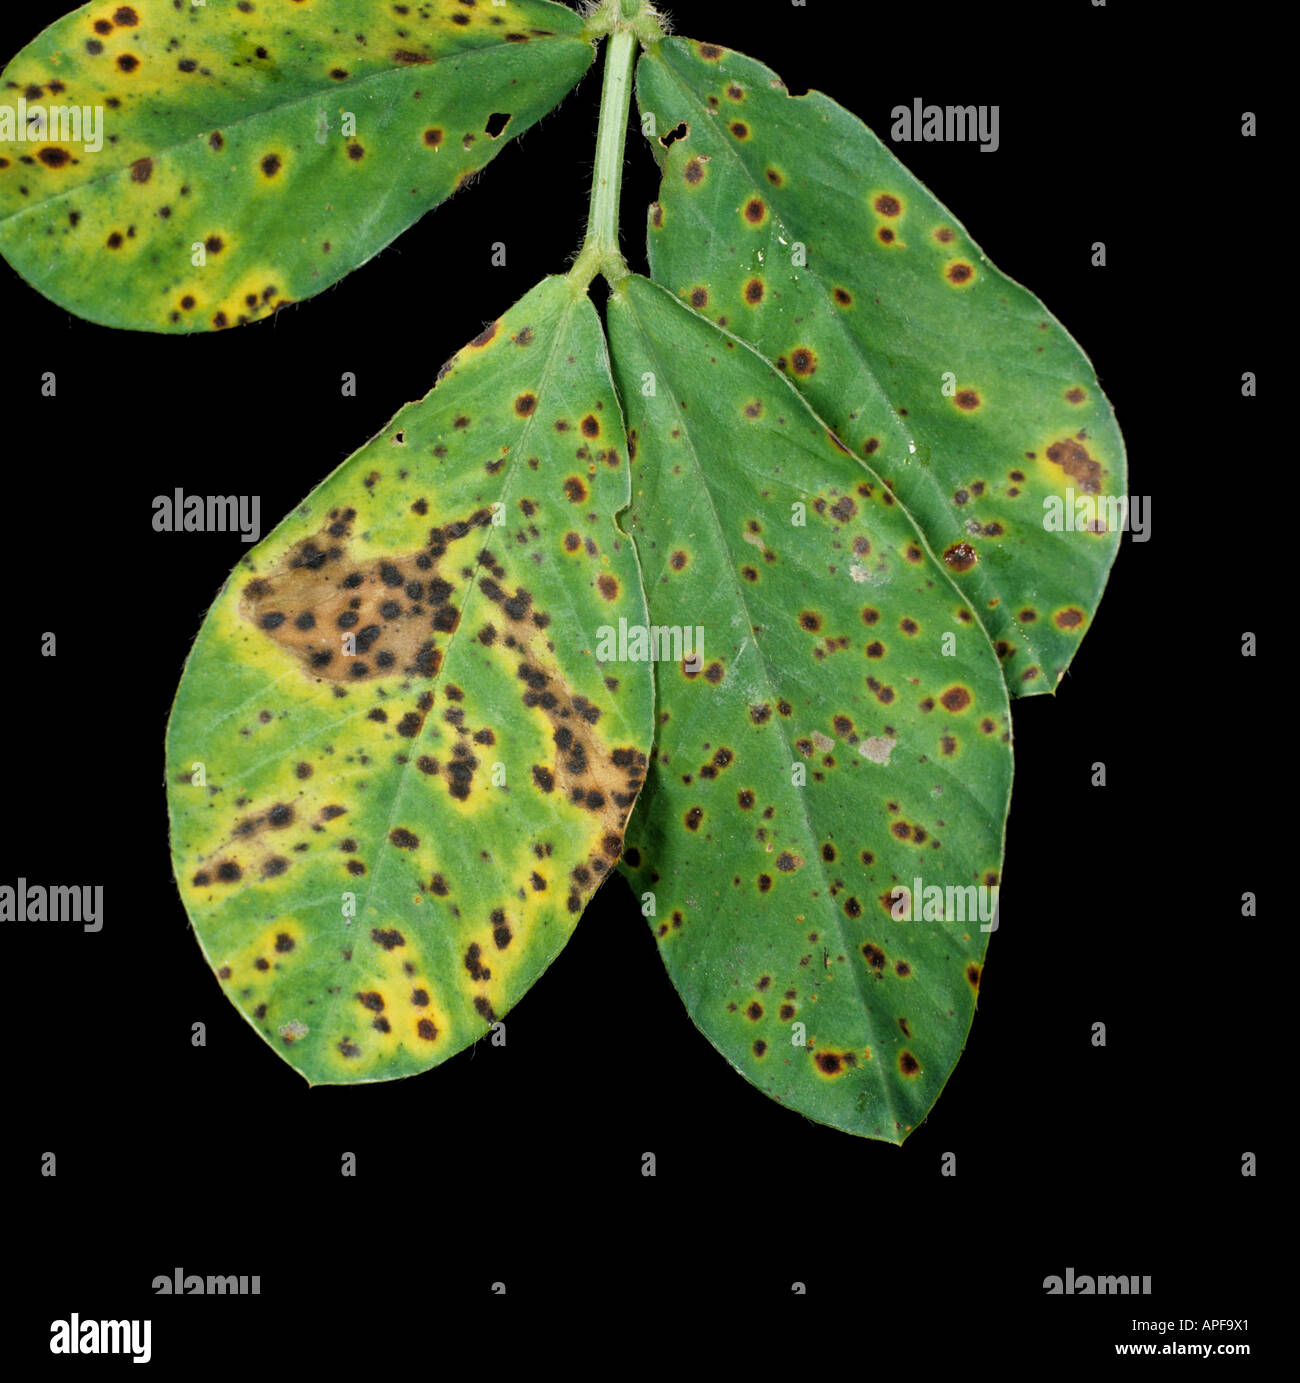 Early leaf spot (Passalora arachnidicola) leaf spots on peanut leaf Stock Photo